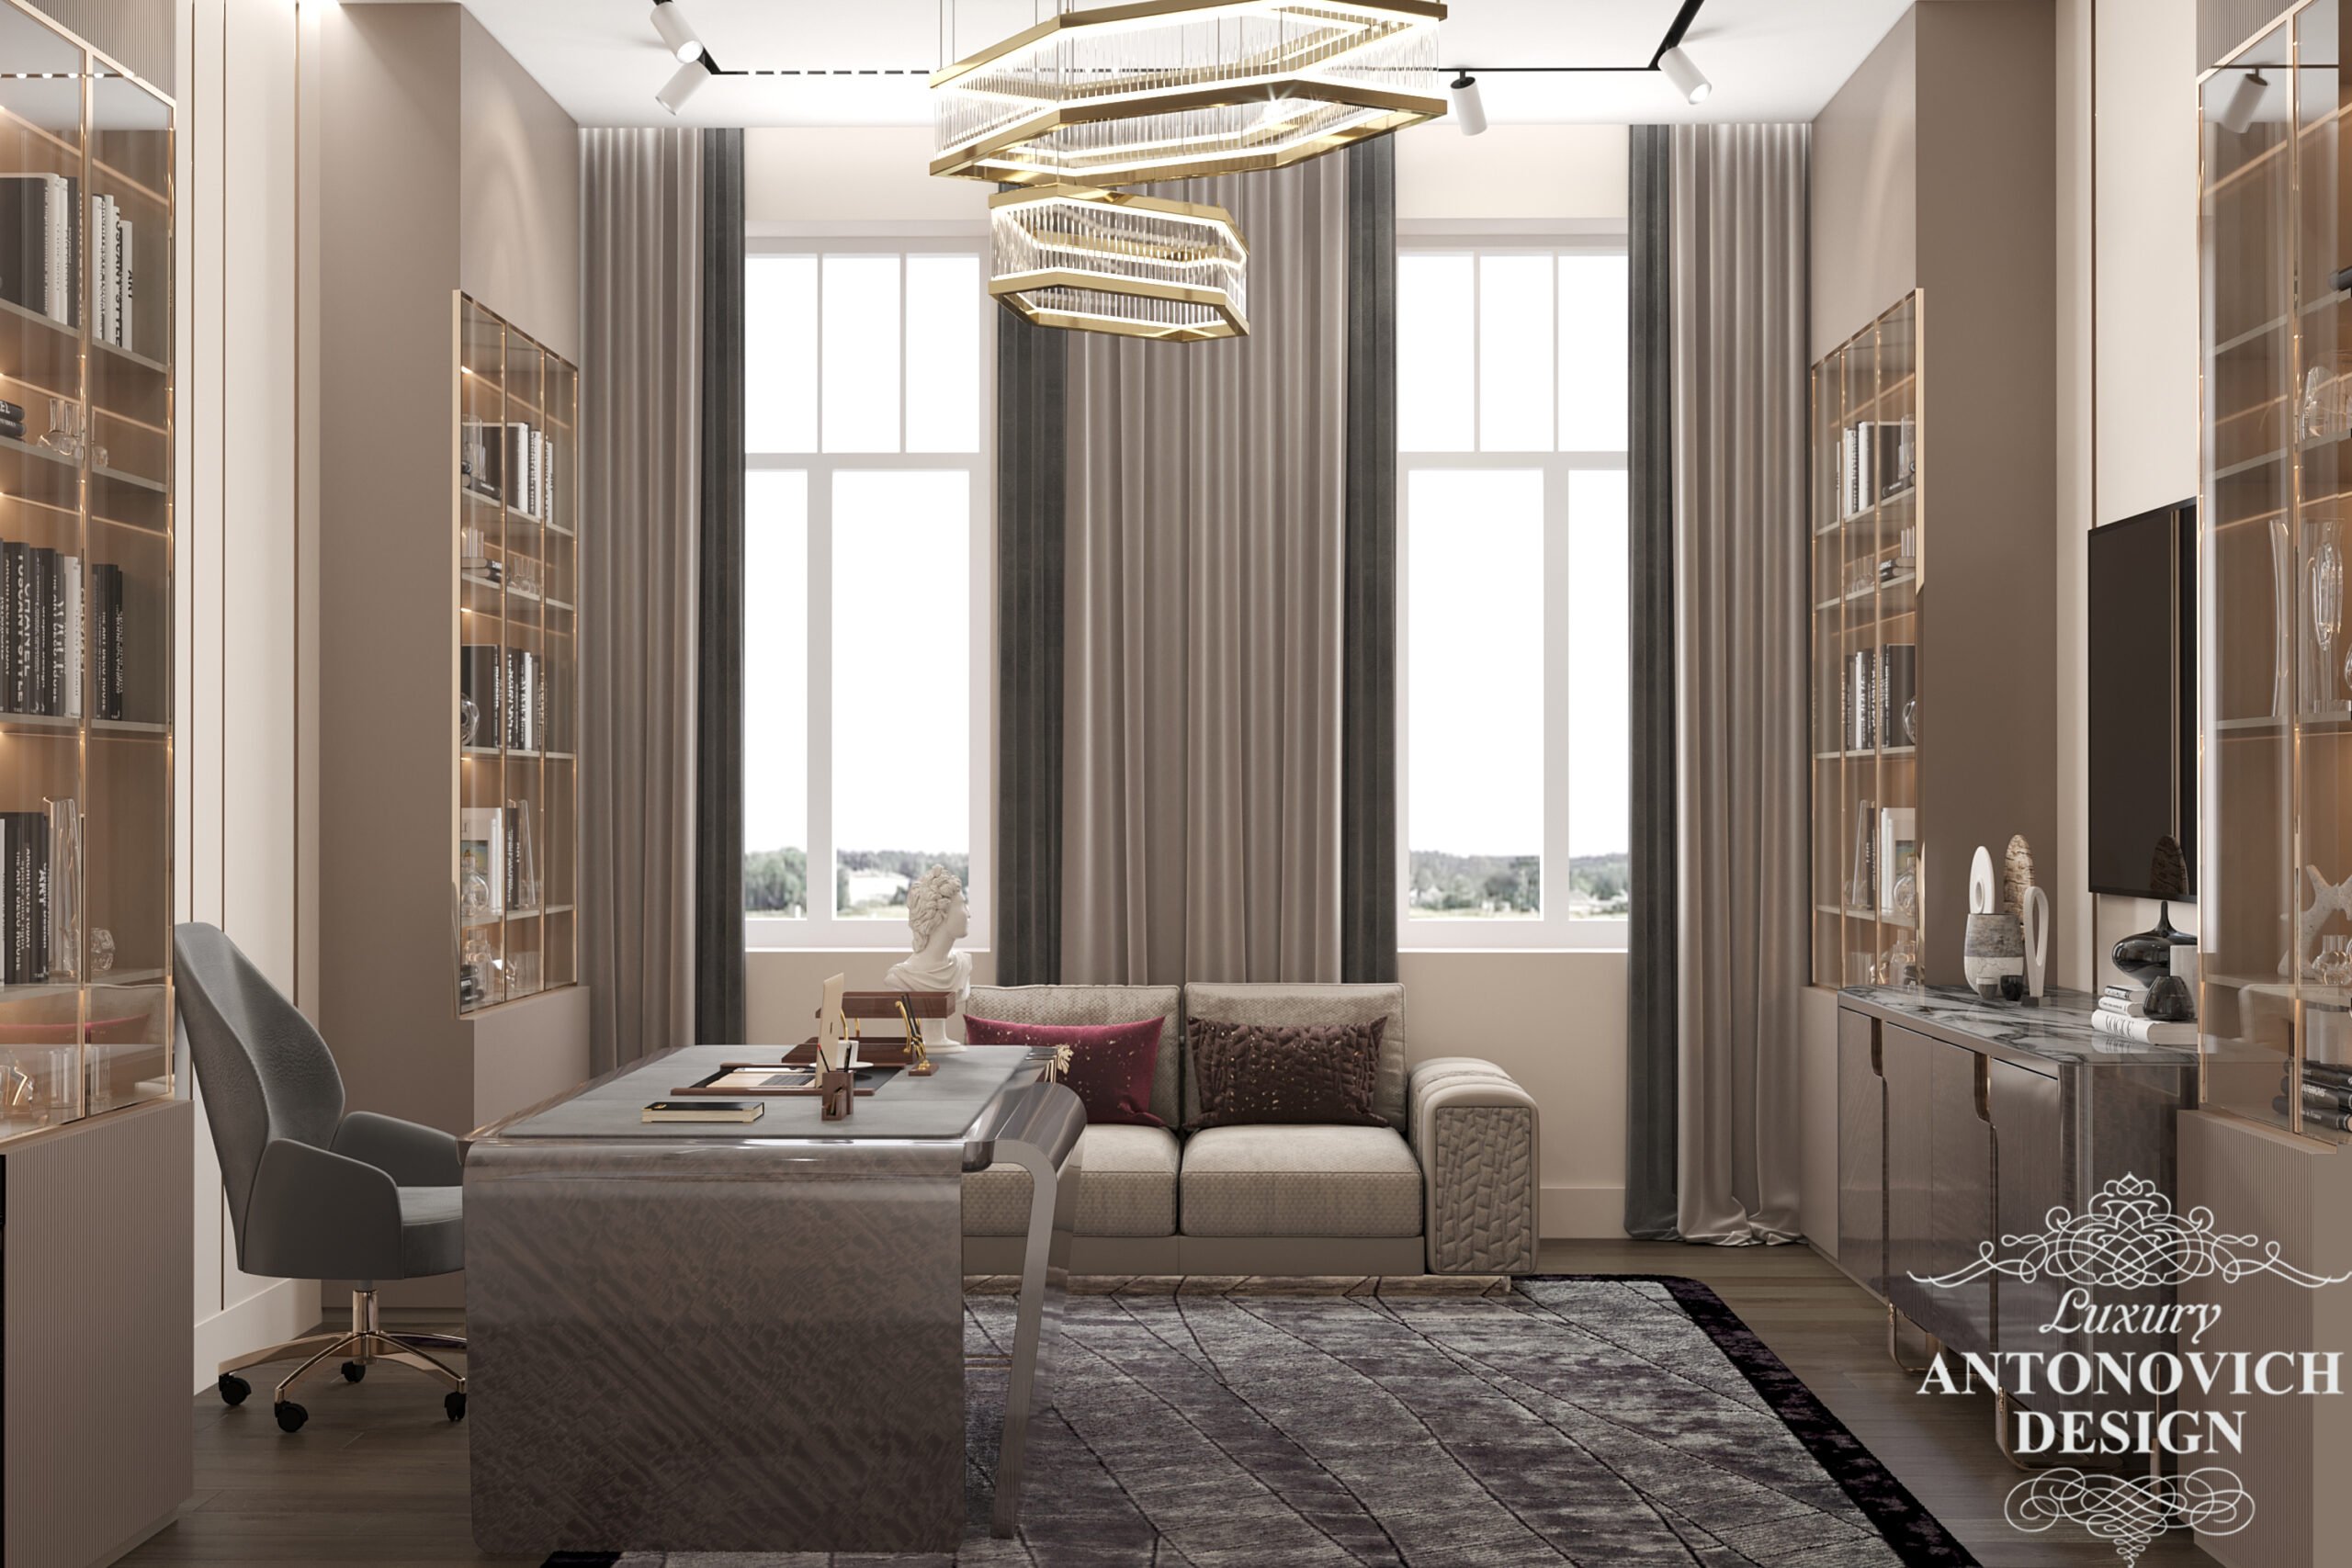 Колекція меблів Giorgio Collection в дизайнерському проекті стильного кабінету в інтер'єрі приватного будинку